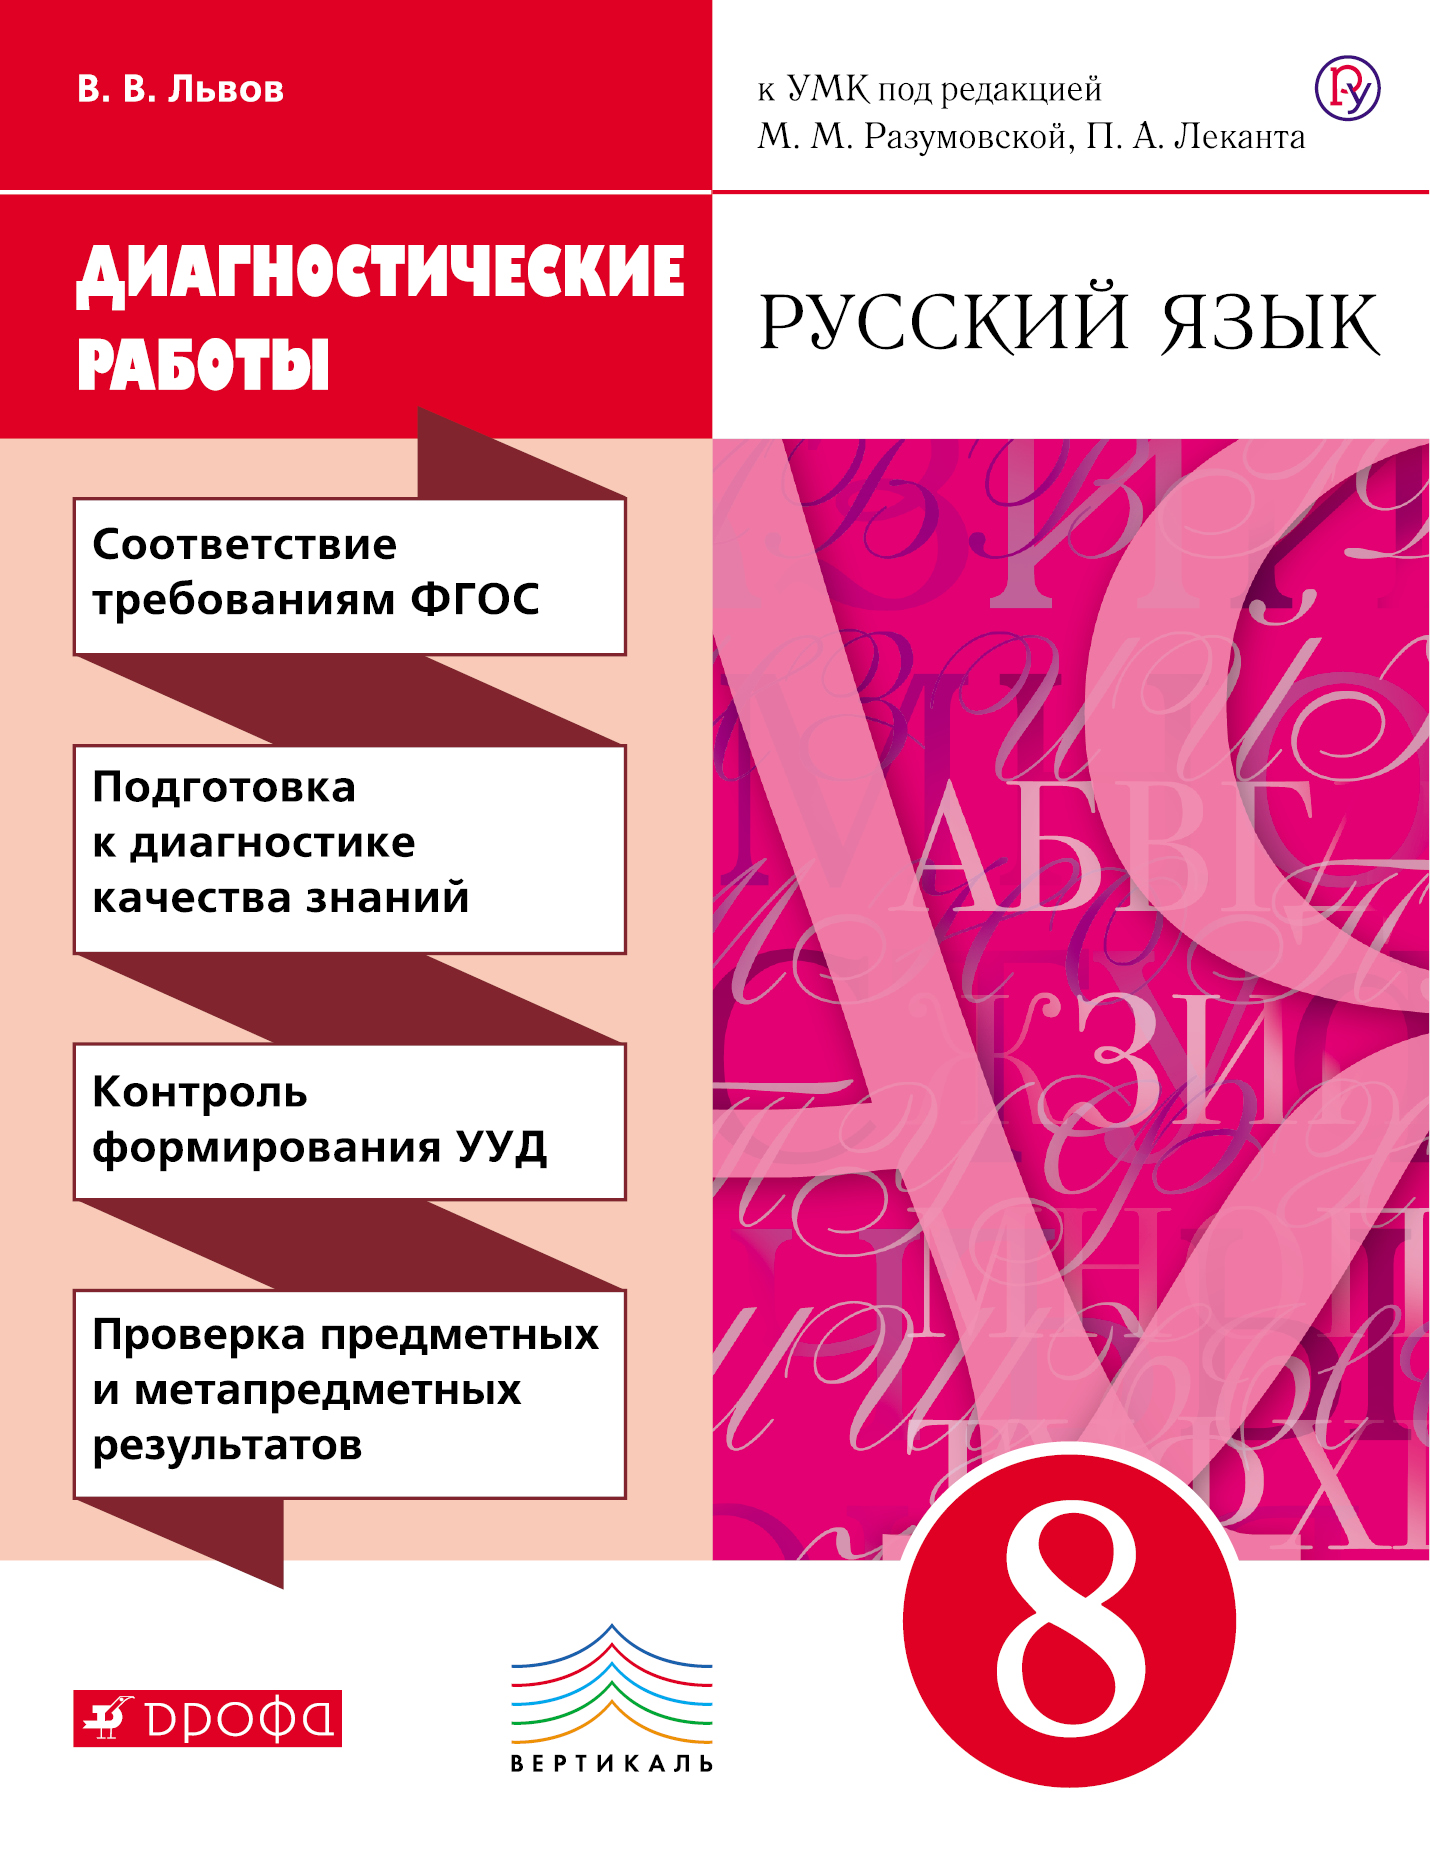 Учебники 8 классов по родному русскому языку